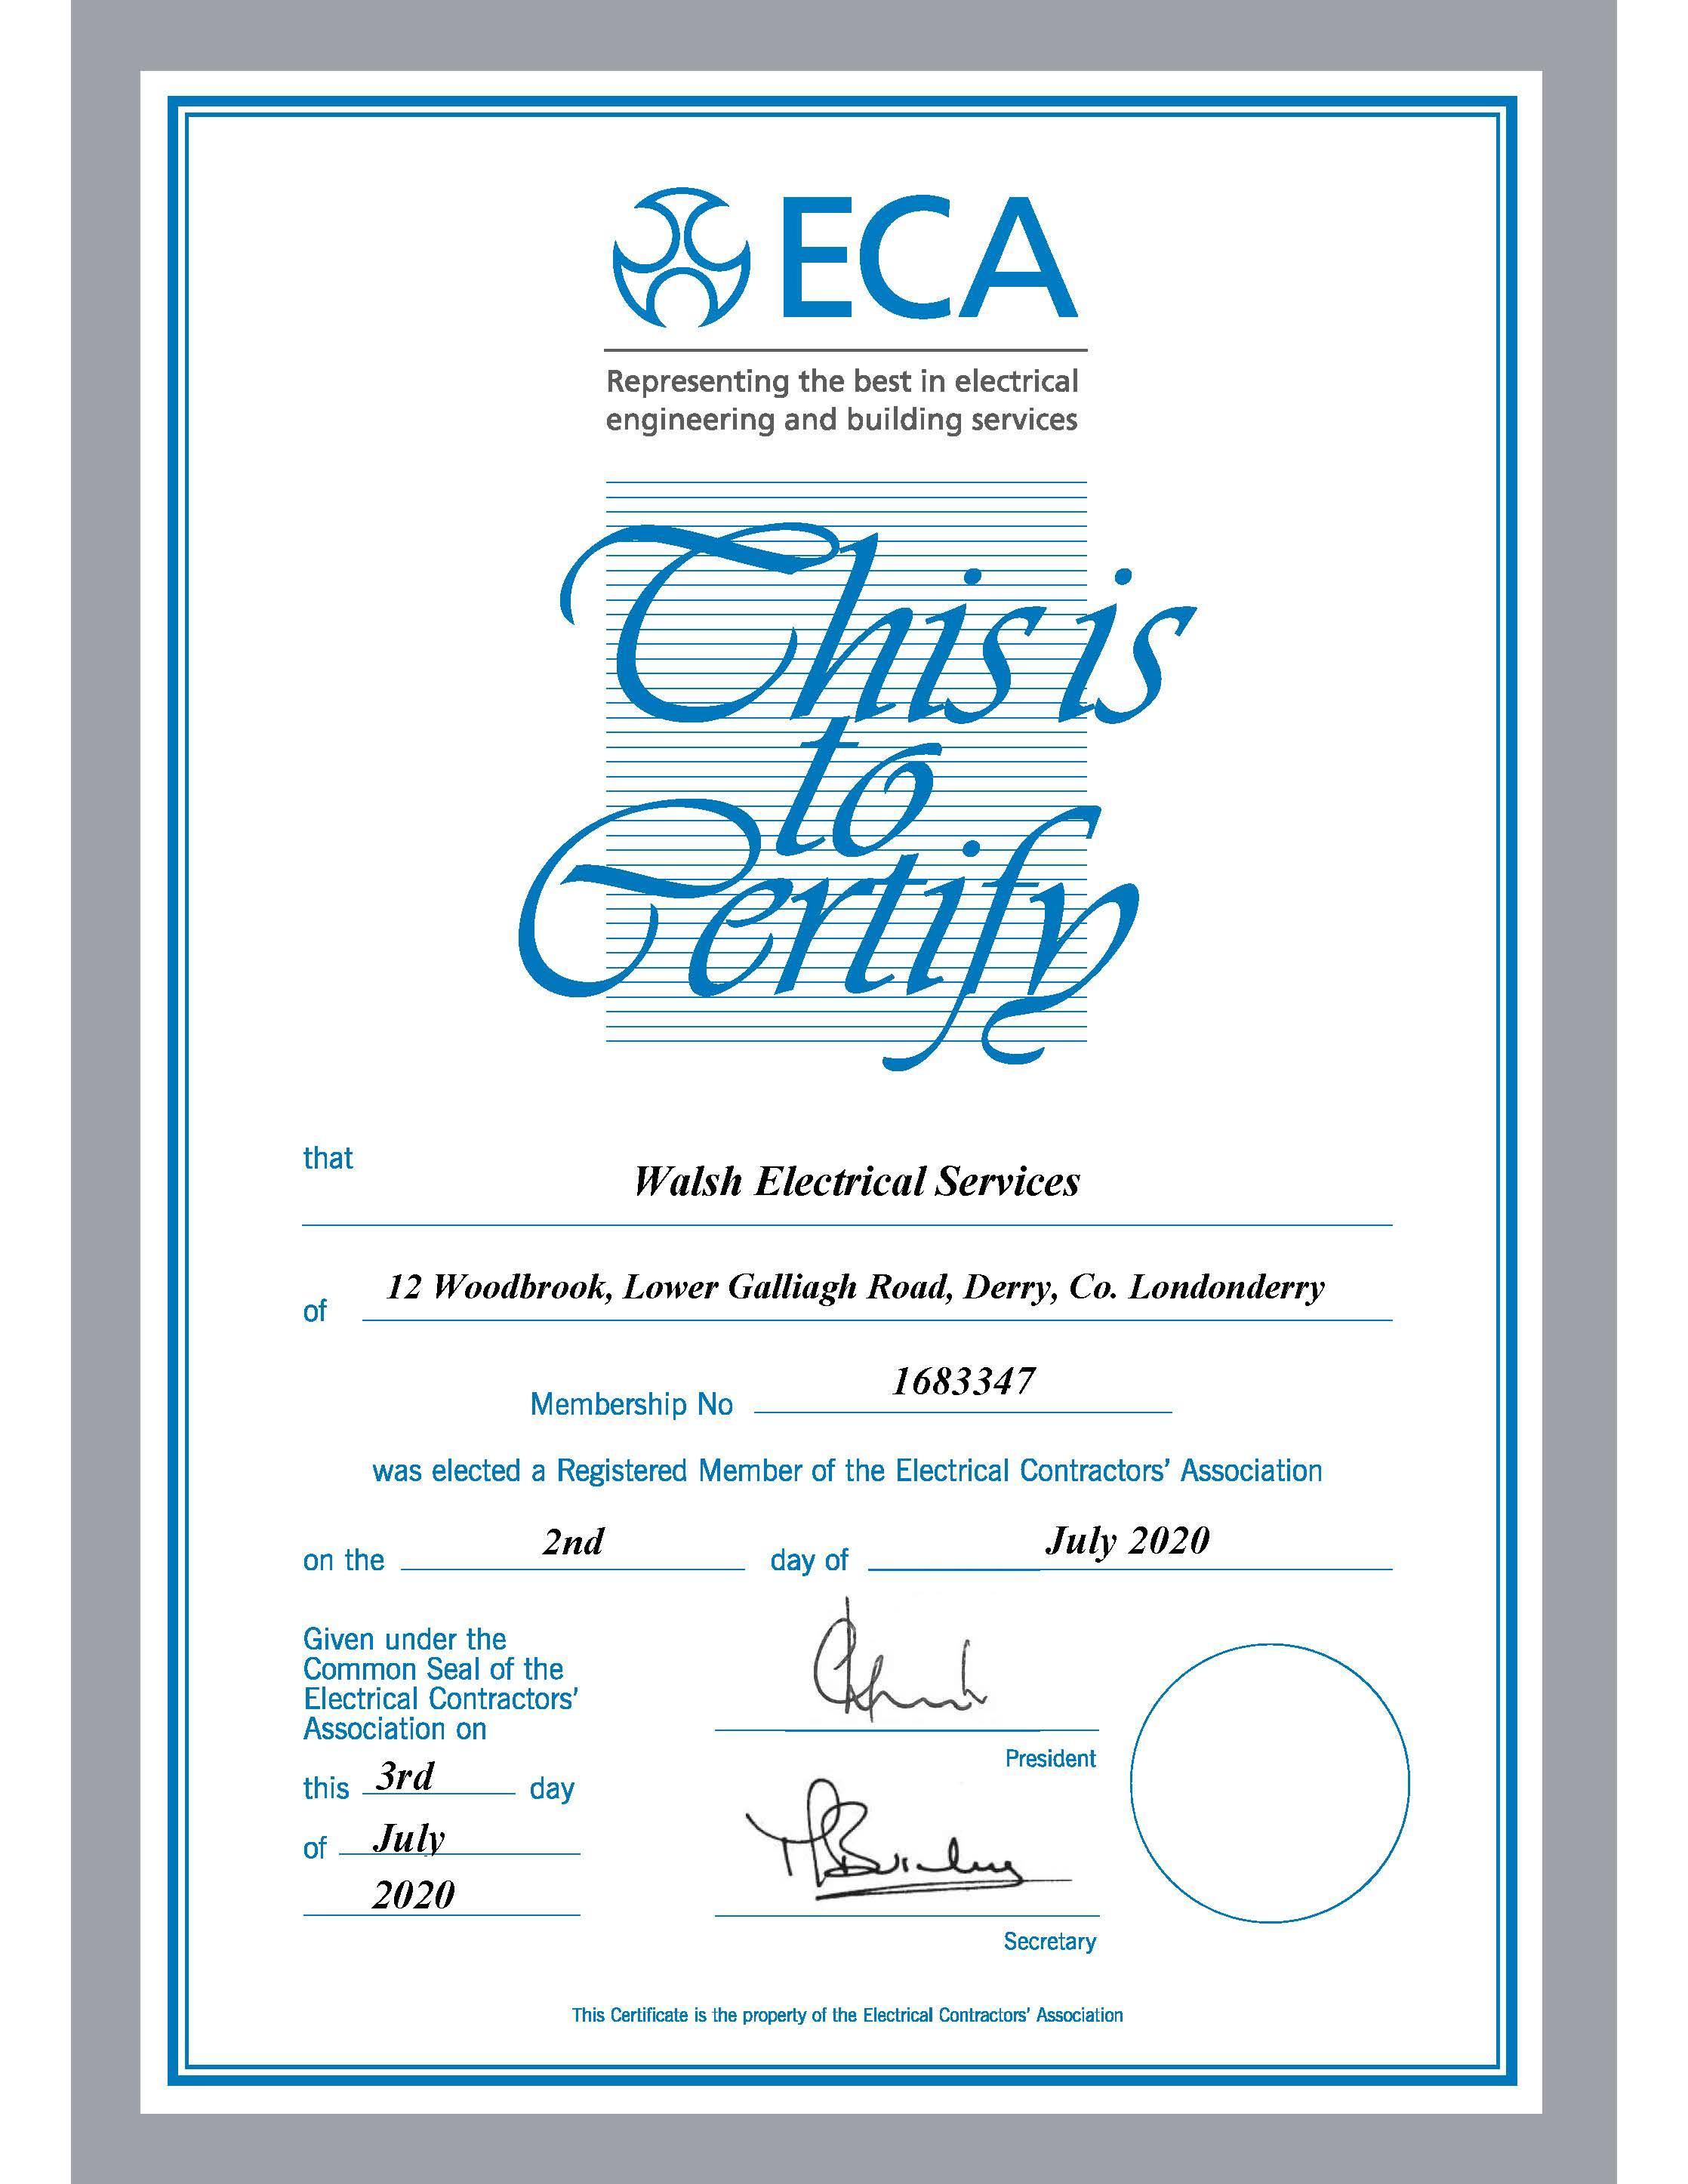 ECA Membership Certificate 1683347